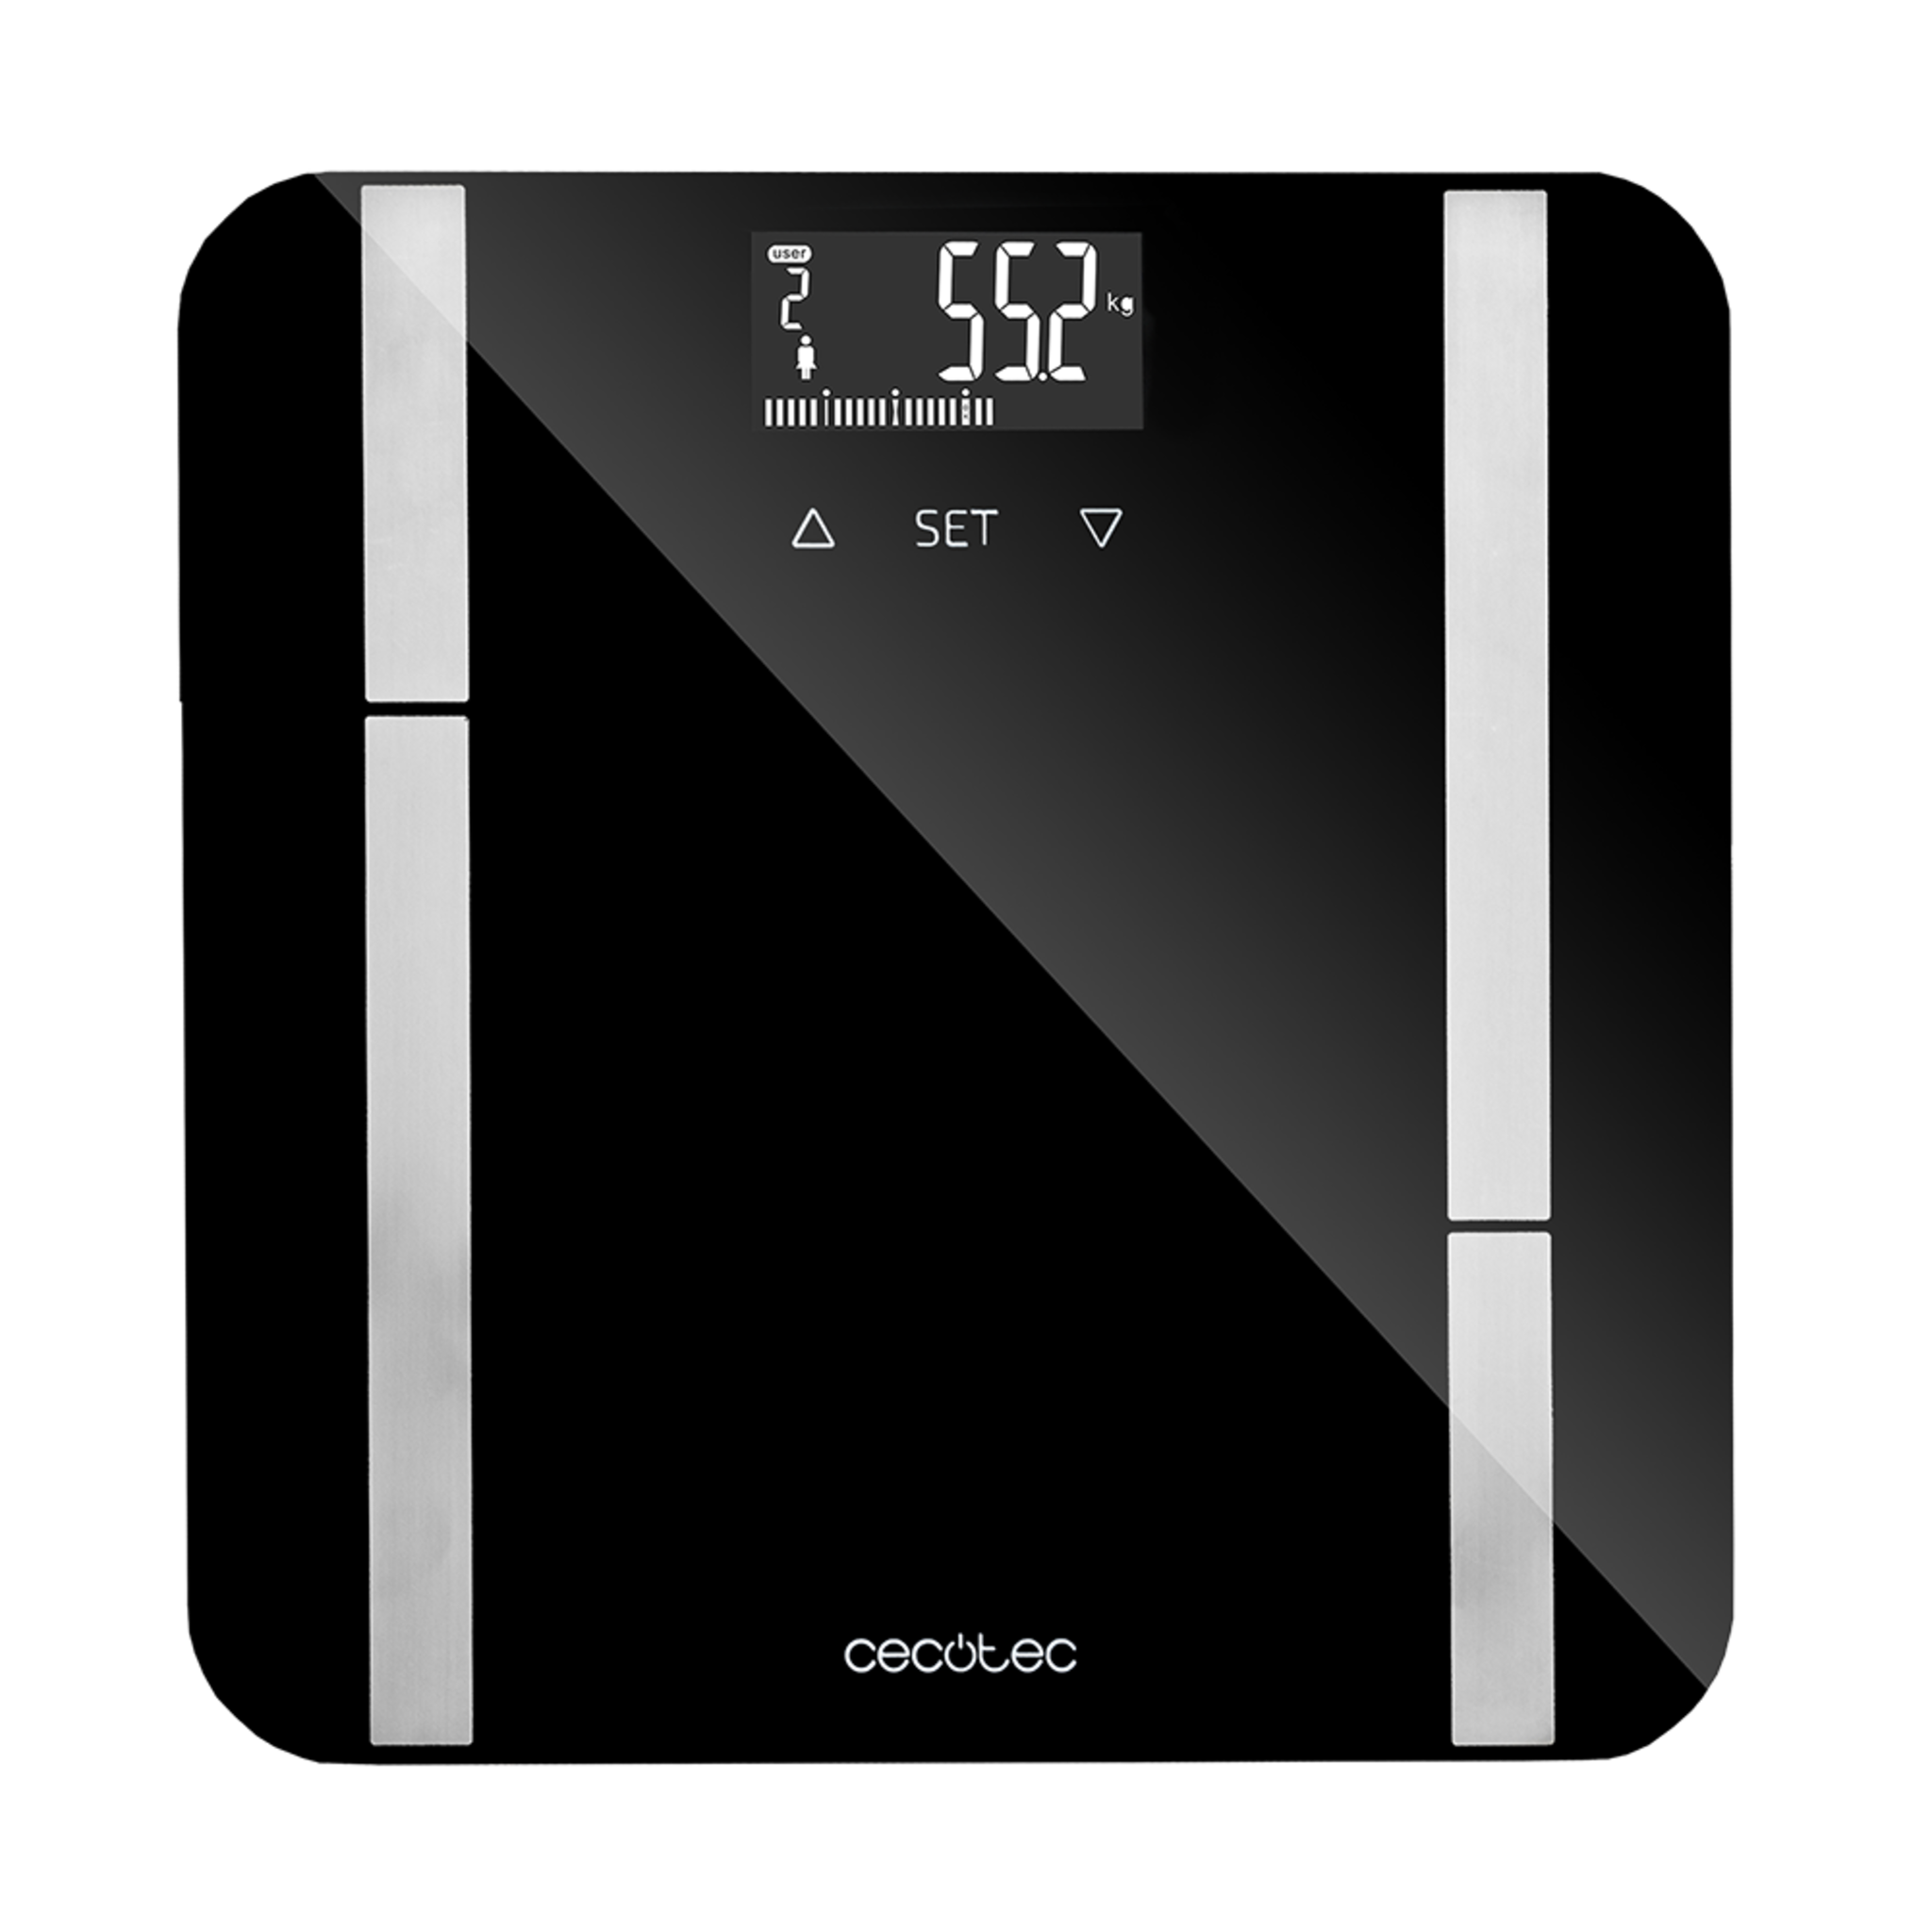 Surface Precision 9450 Full Healthy digitale Personenwaage Wiegefläche aus einscheibensicherheitsglas, umgedrehtem LCD-Display, maximaler Tragfähigkeit von 180 kg, ohne Anschlussmöglichkeit, schwarz.